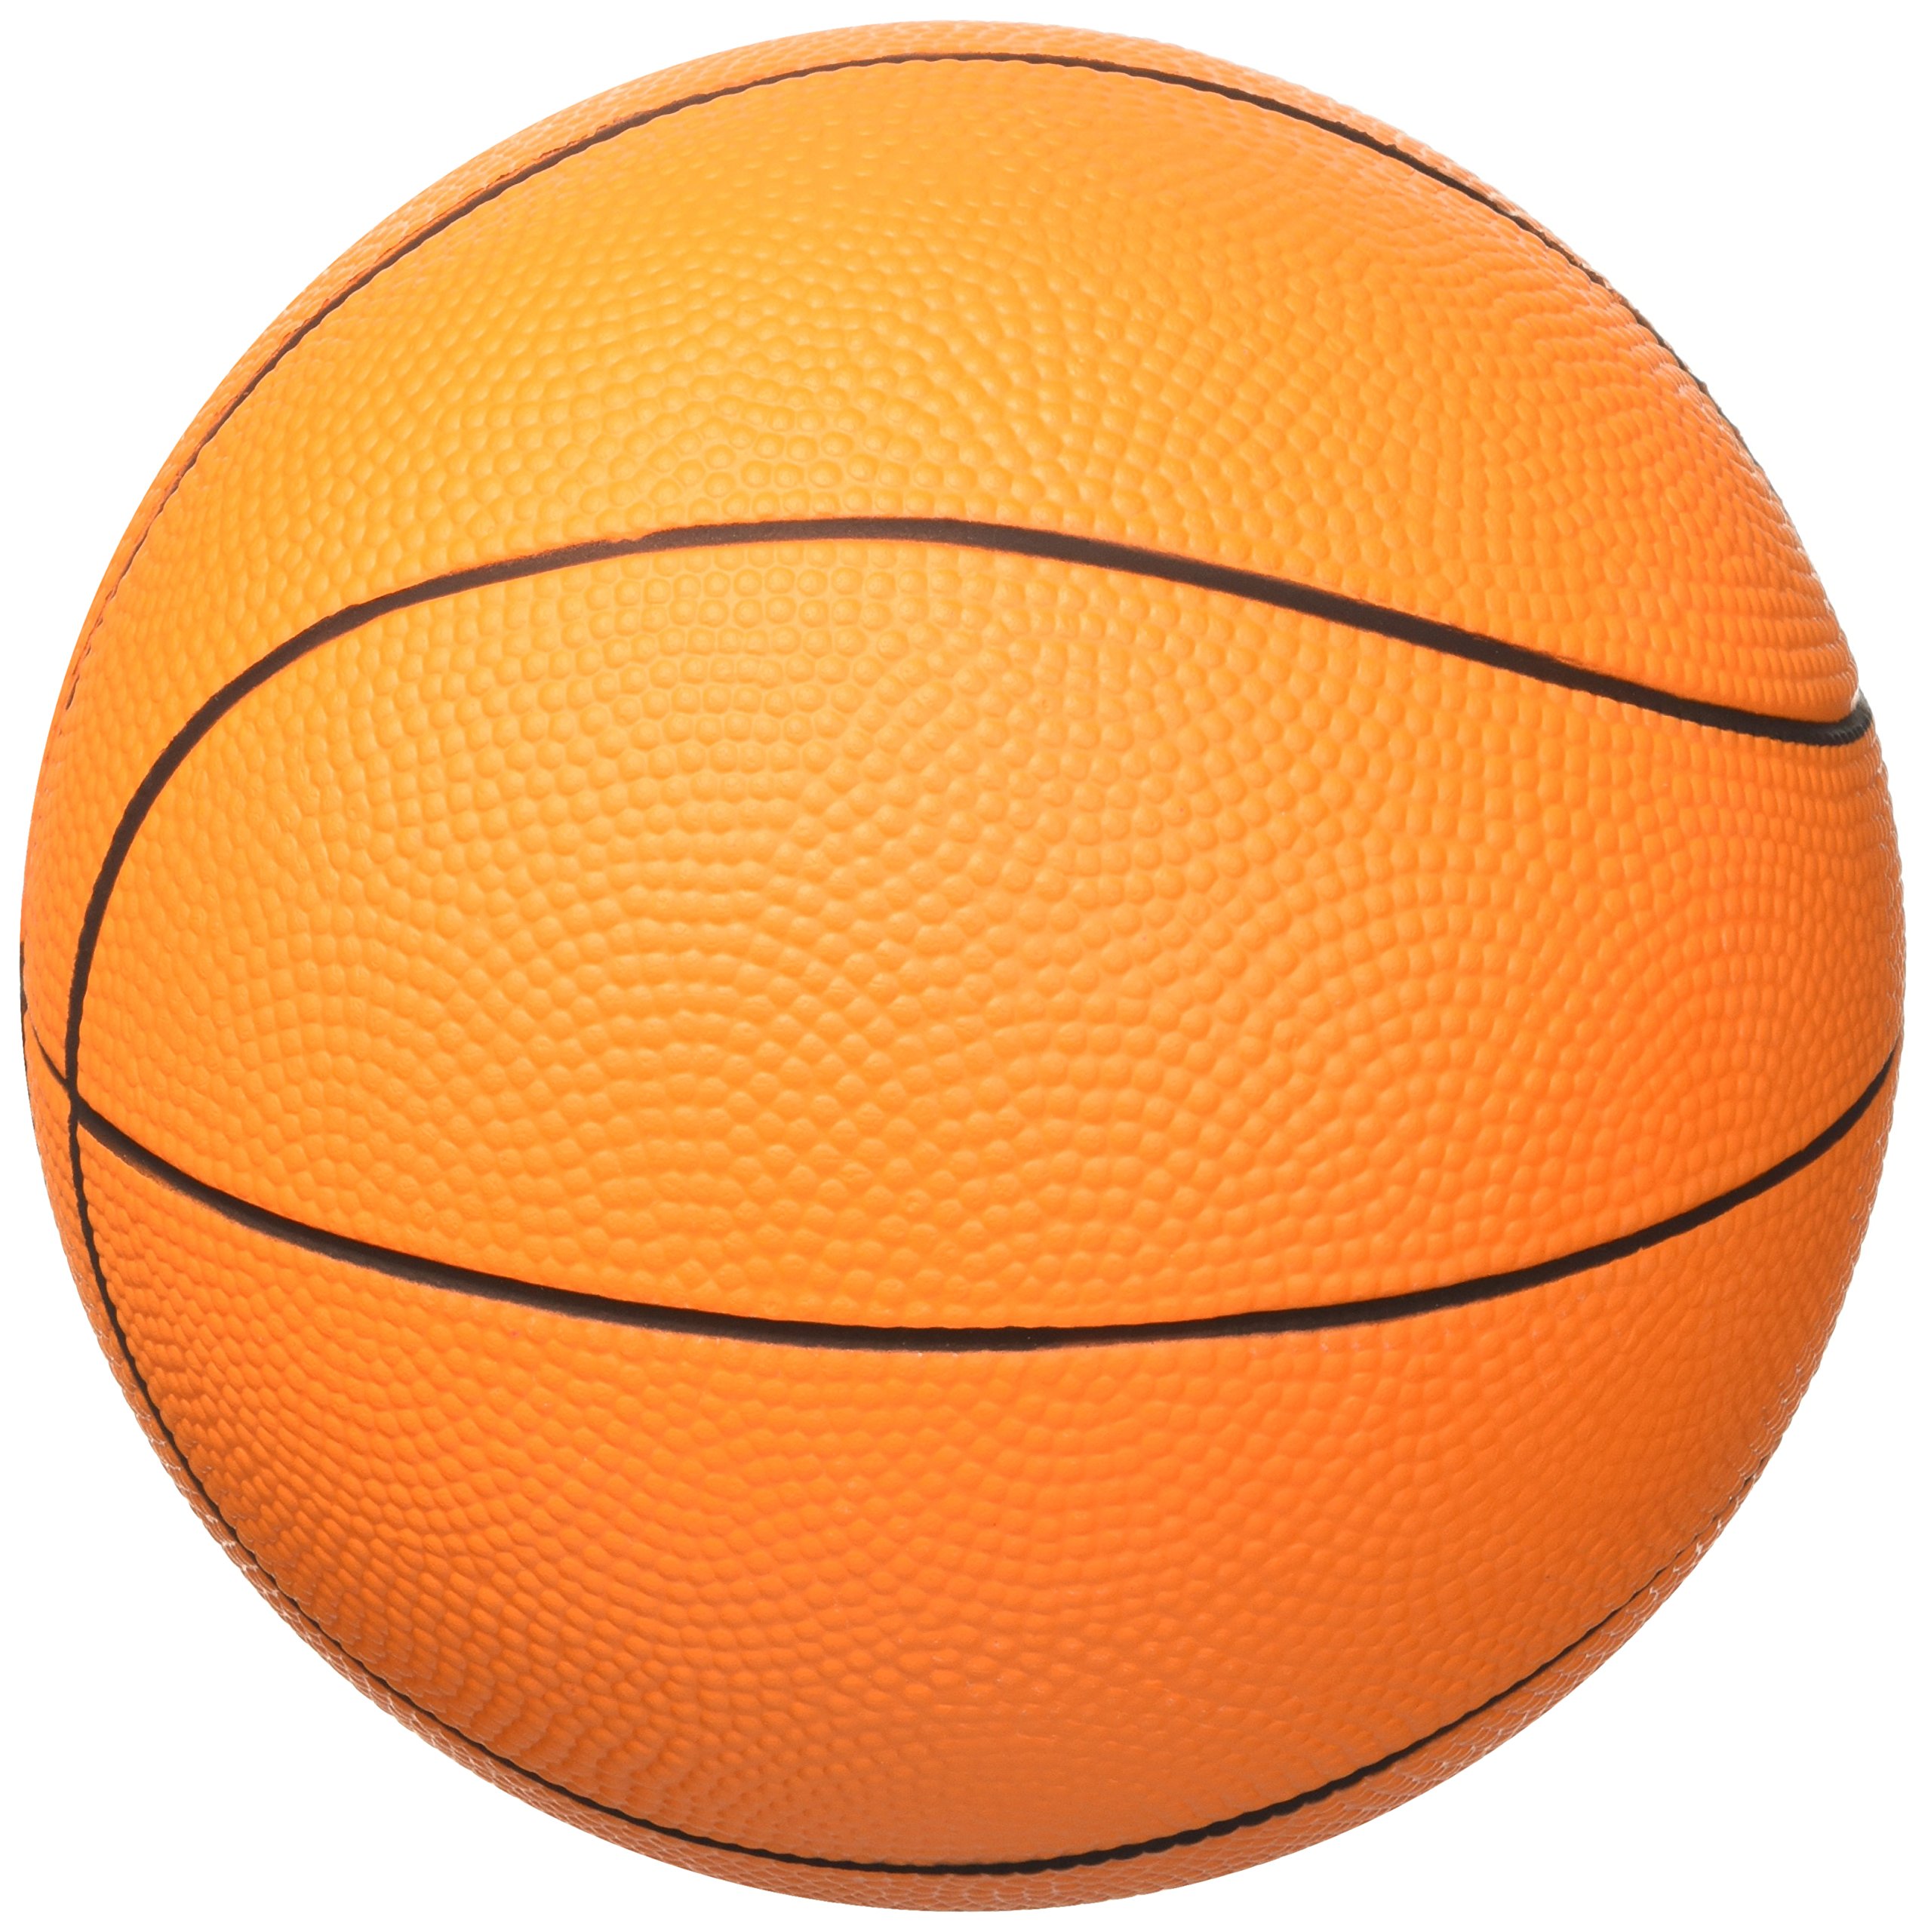 Softee 10900 Schaumstoffball förmigen Ballon Basketball, orange, S